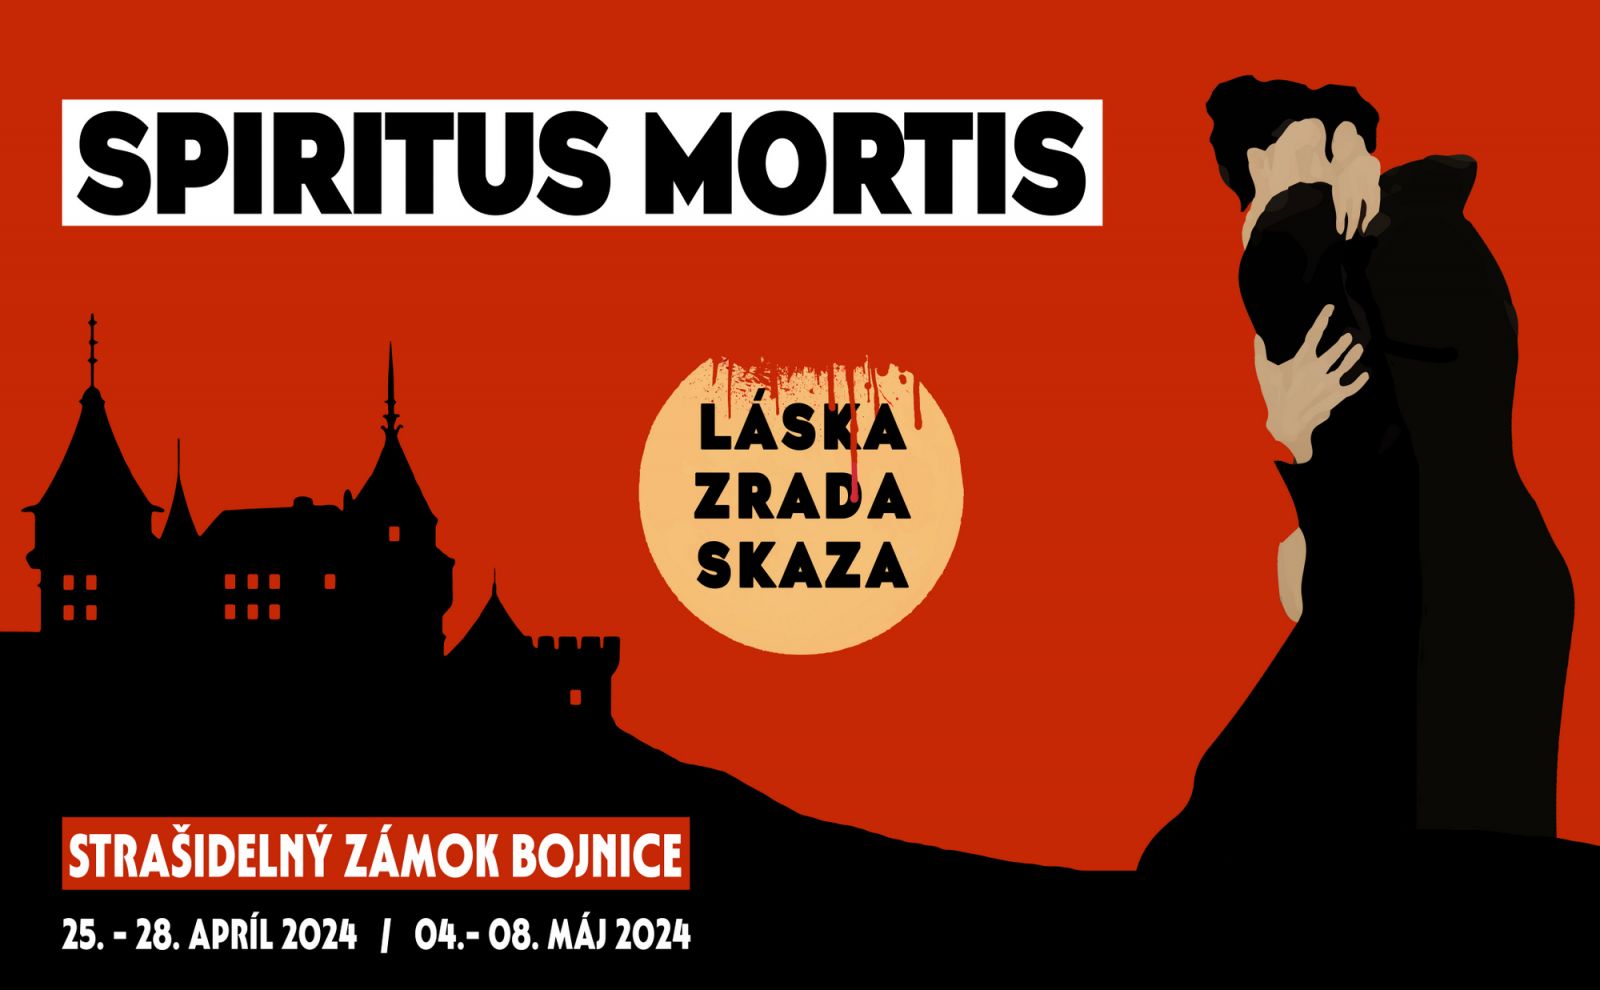 Bojnický zámok prinesie hororovo-romantickú šou Spiritus Mortis v rámci podujatia Strašidelný zámok